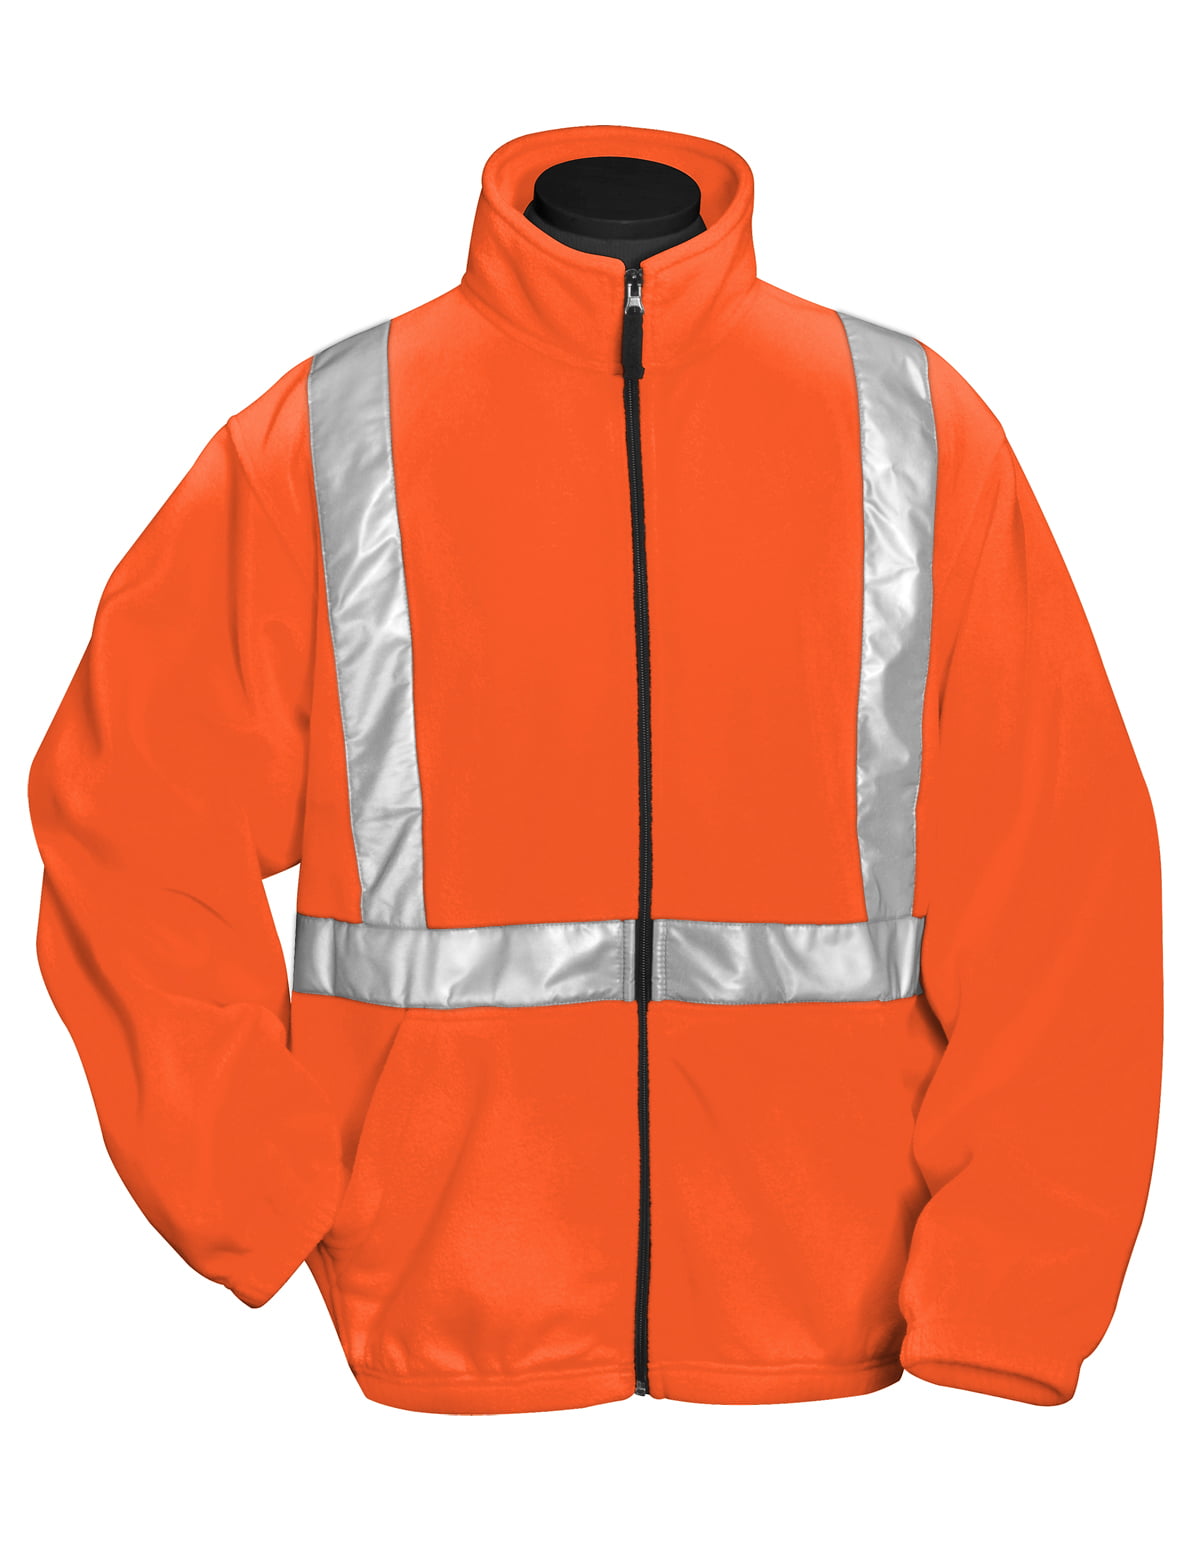 Orange/Navy Small Portwest US467ONRS Regular Fit Hi-Vis Two Tone Traffic Jacket 